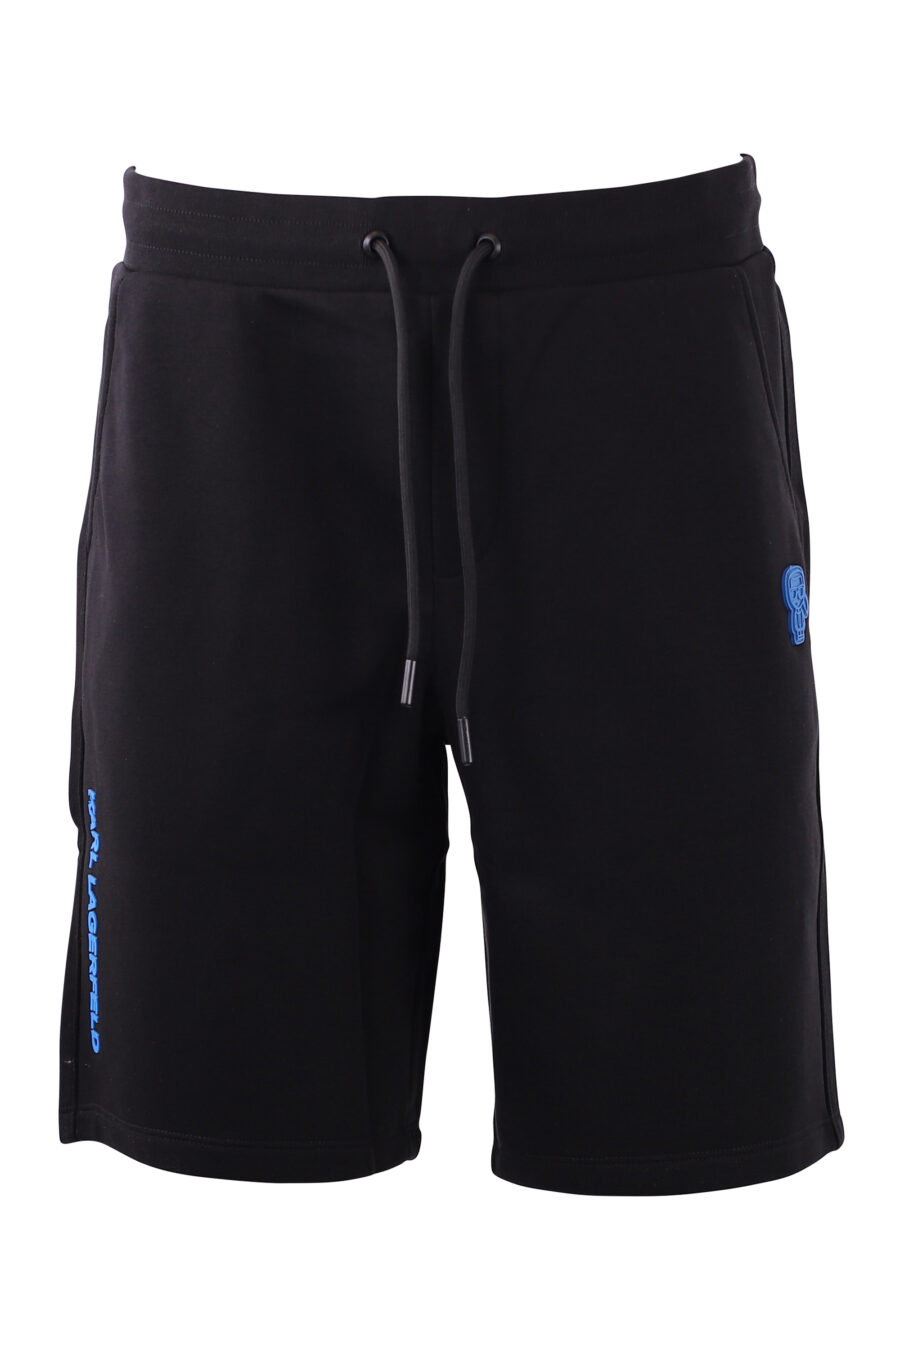 Tracksuit shorts black with blue logo - IMG 8583